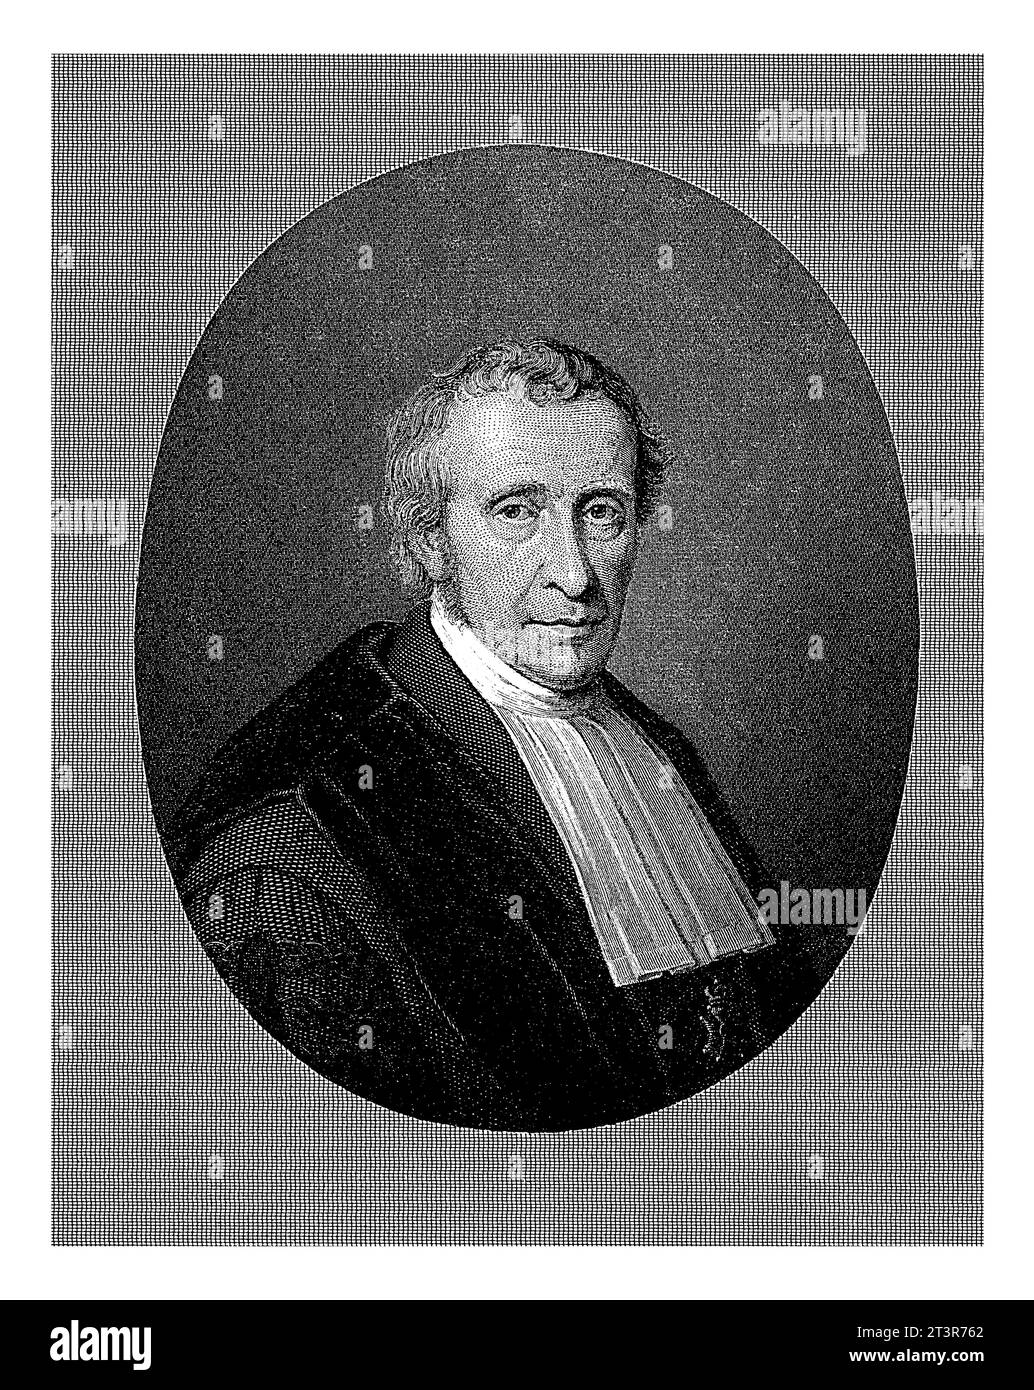 Portrait of Bernardus Franciscus Suerman, Willem Frederik Wehmeyer, after Bastiaan de Poorter, 1834 - 1854 Portrait of Bernardus Franciscus Suerman, p Stock Photo